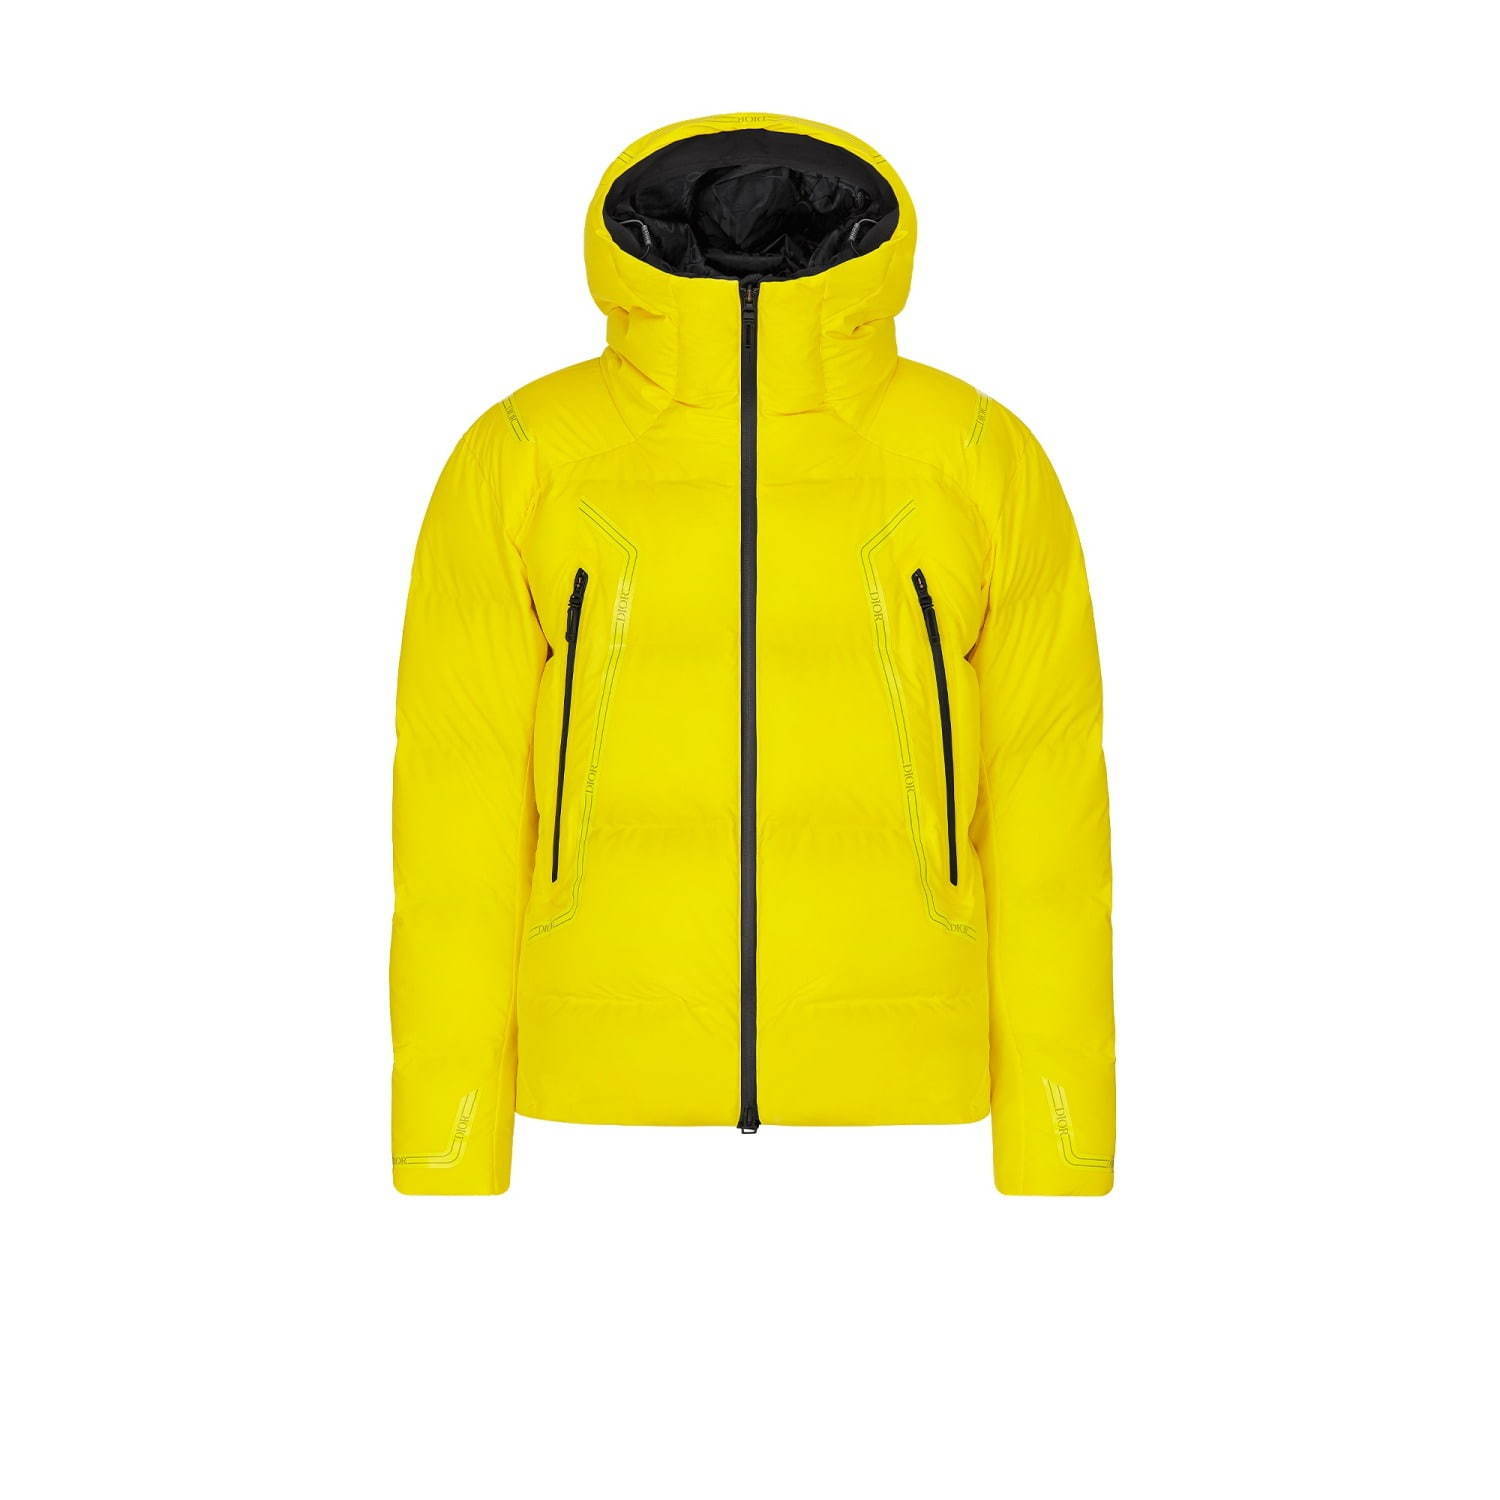 おすすめメンズダウンジャケット特集 人気ブランドの高機能ダウンや冬コーデに使えるアウター ファッションプレス